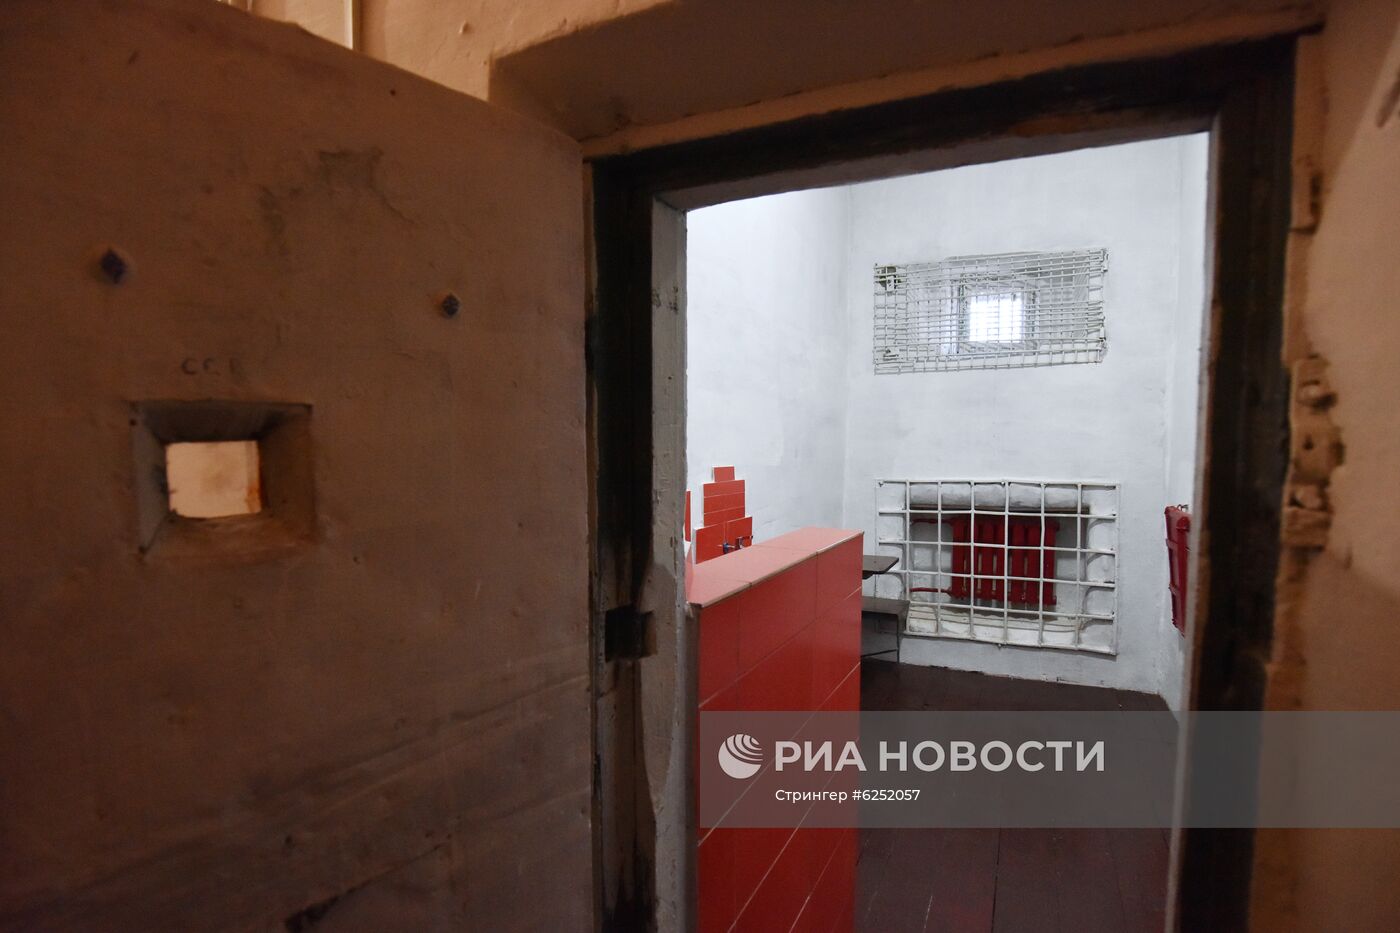 Платные камеры появились в СИЗО на Украине